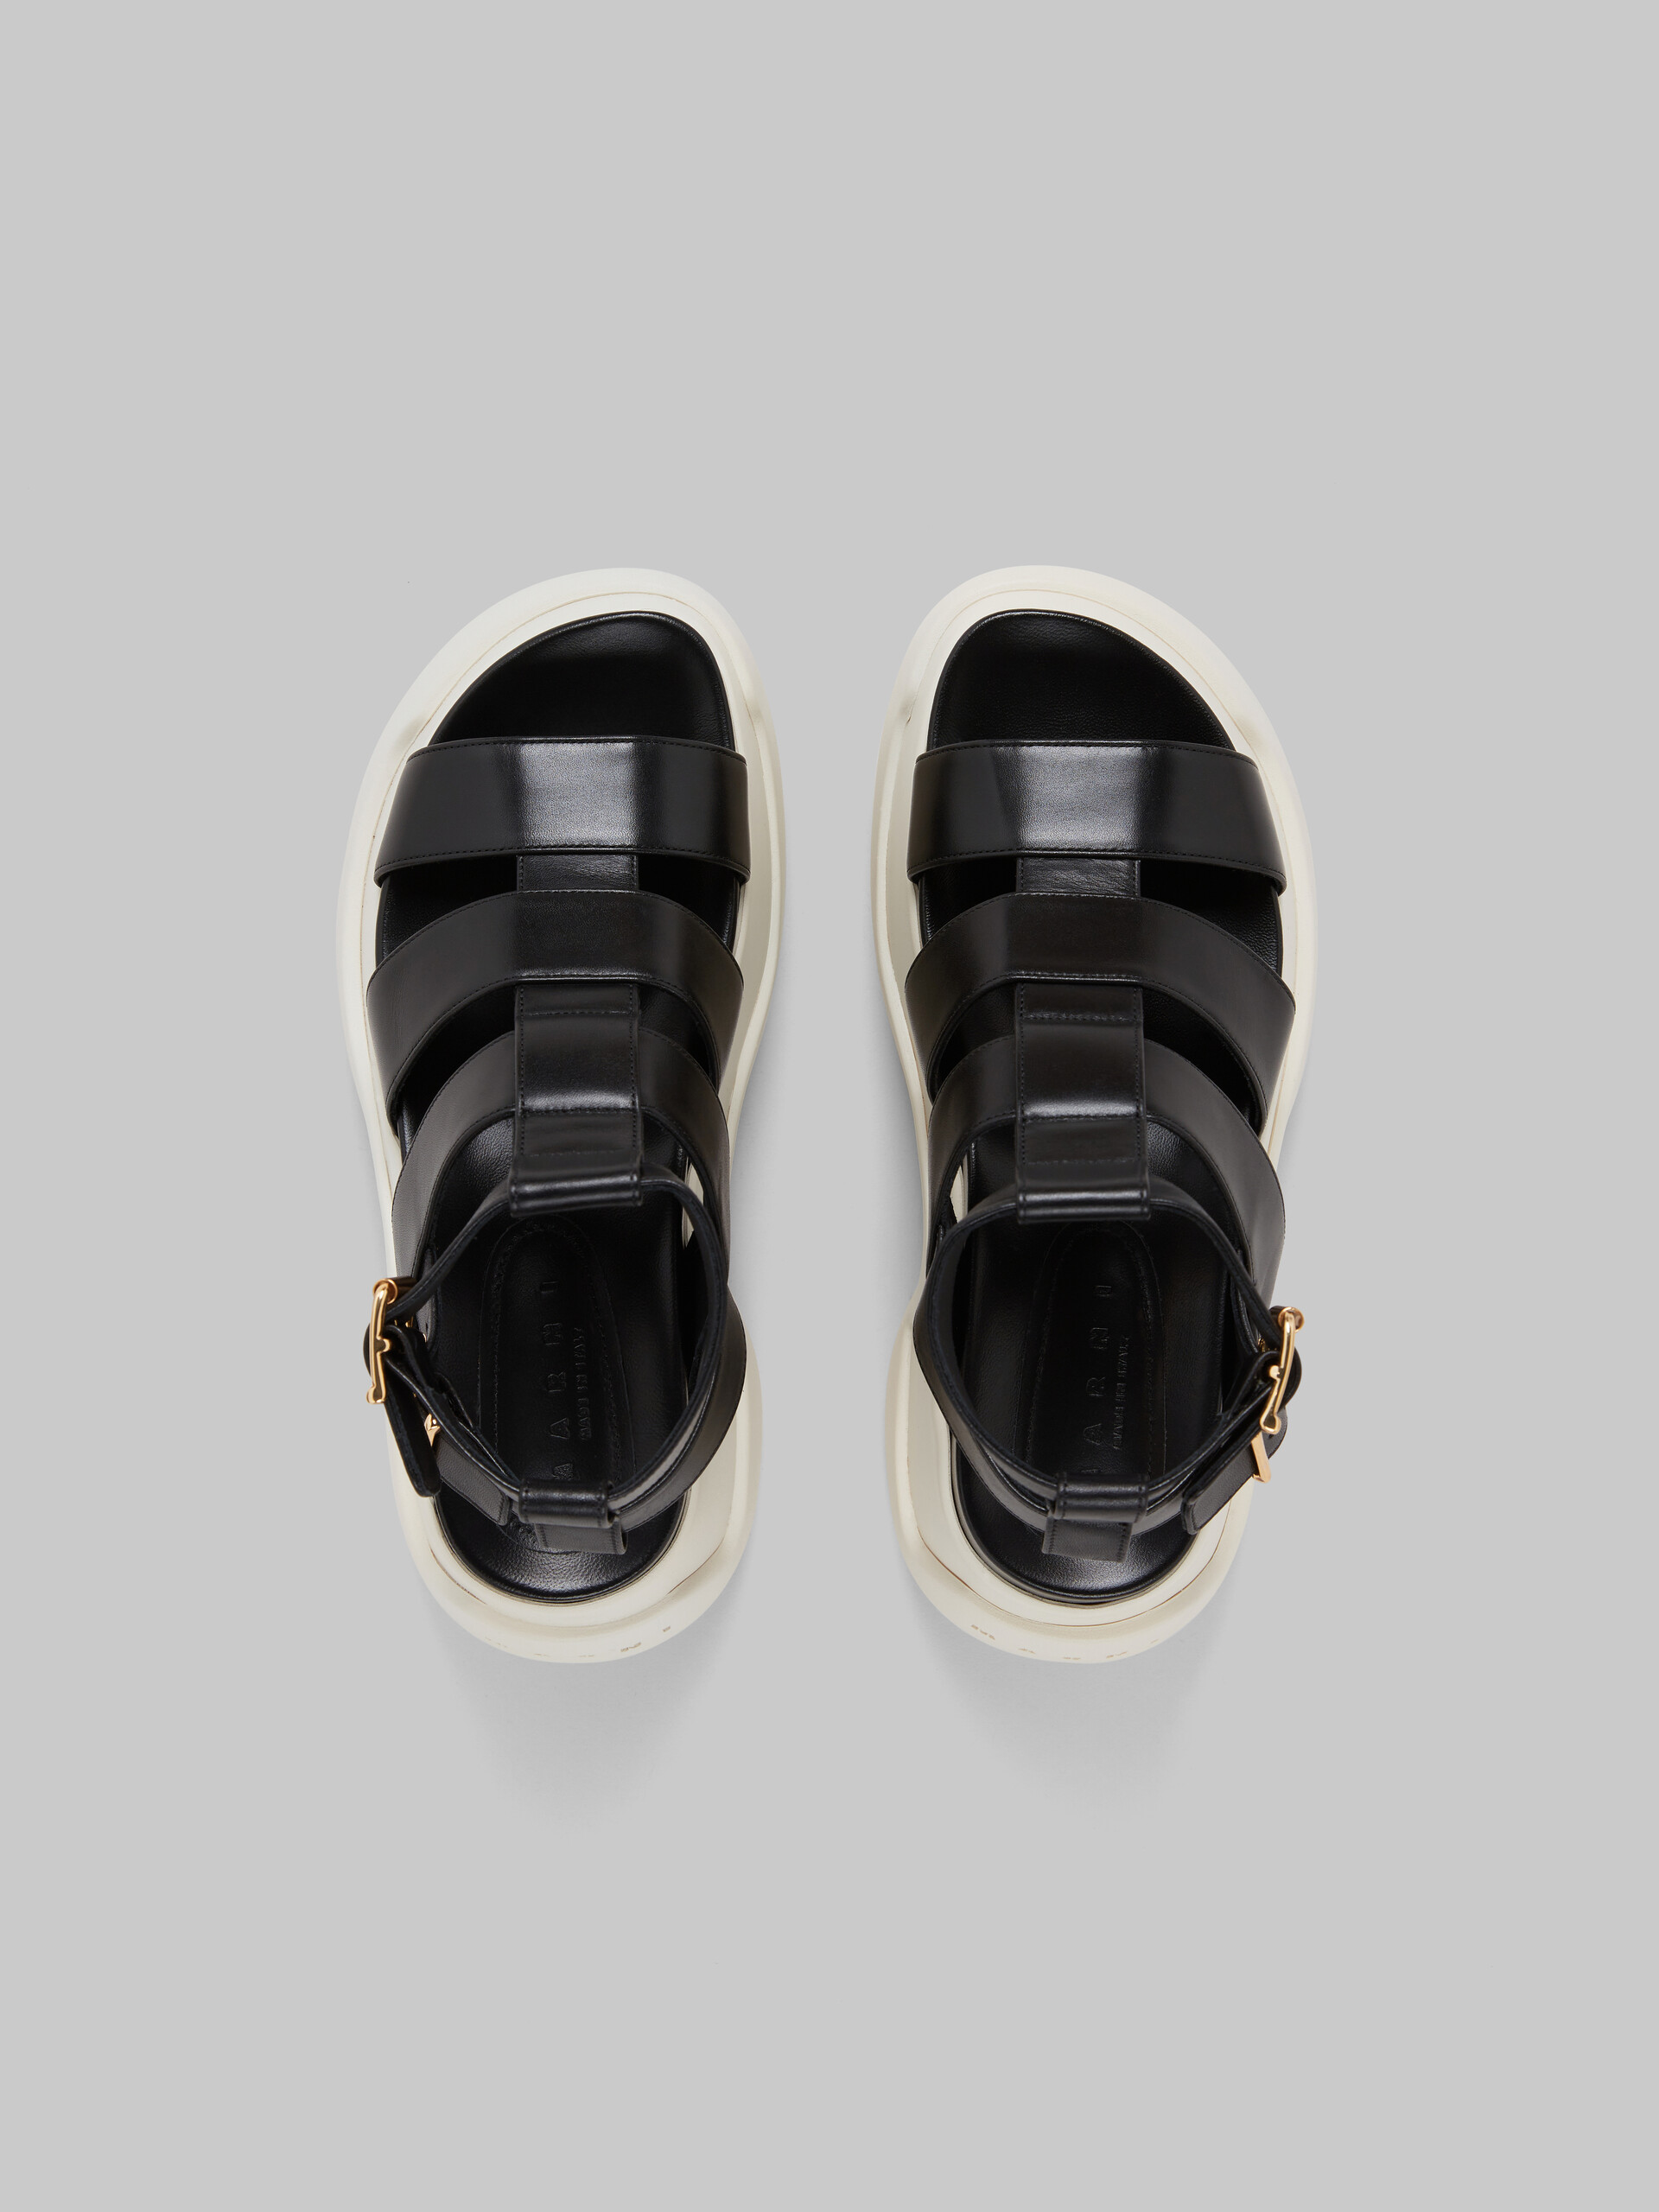 Black leather gladiator sandal with platform sole - Sandals - Image 4